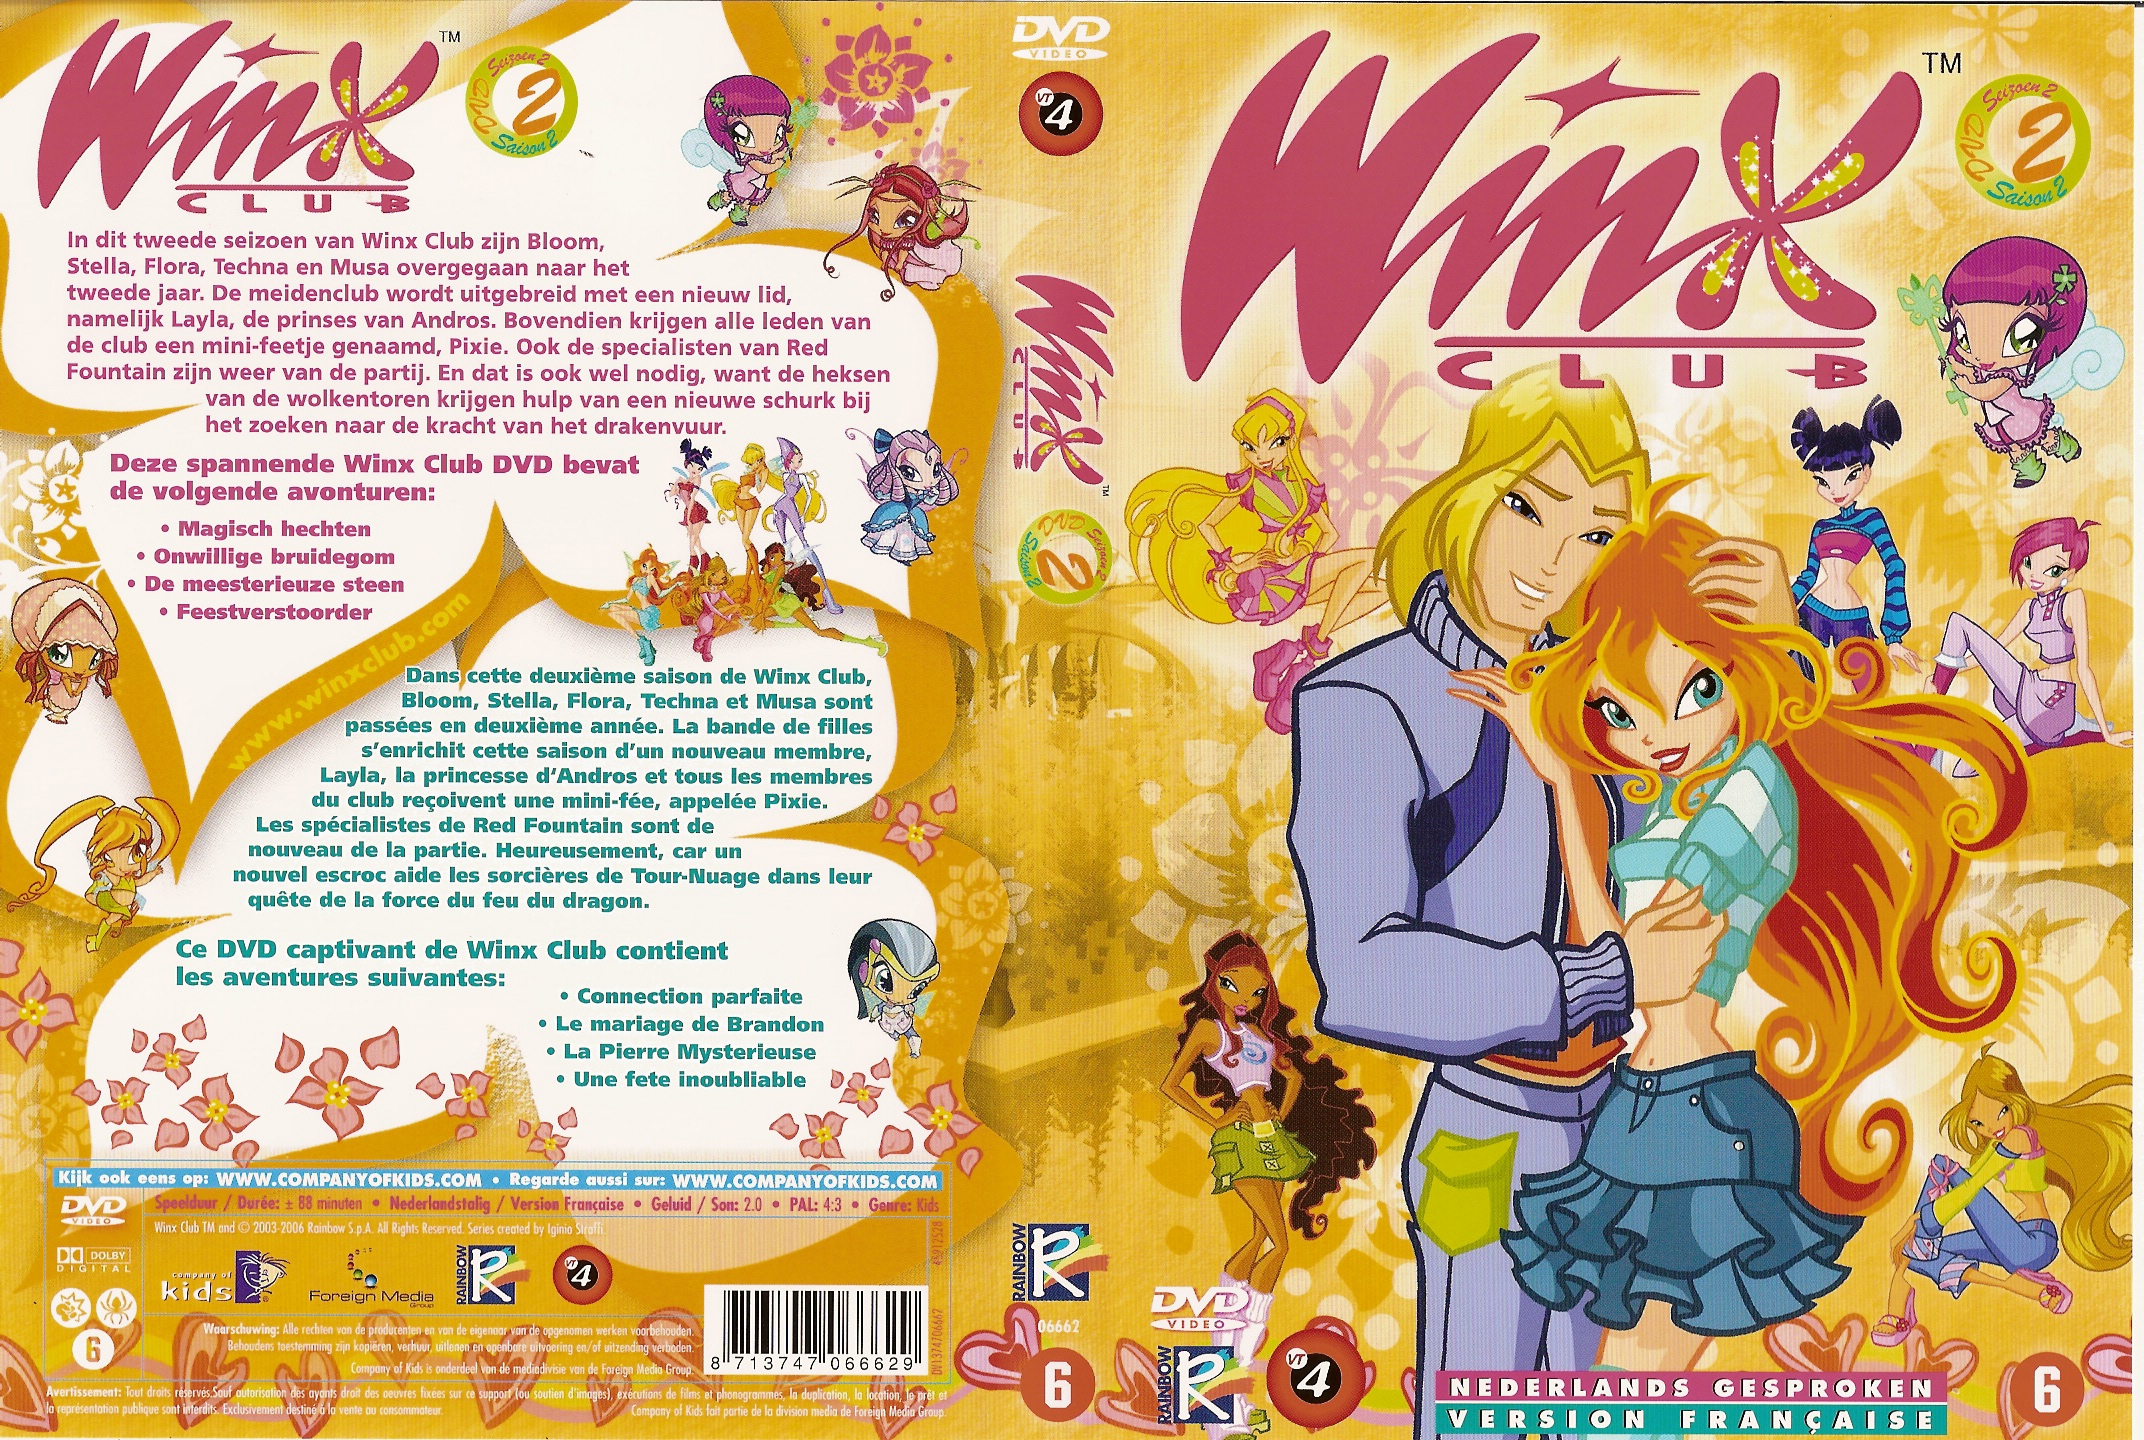 Jaquette DVD Winx Saison 2 vol 2